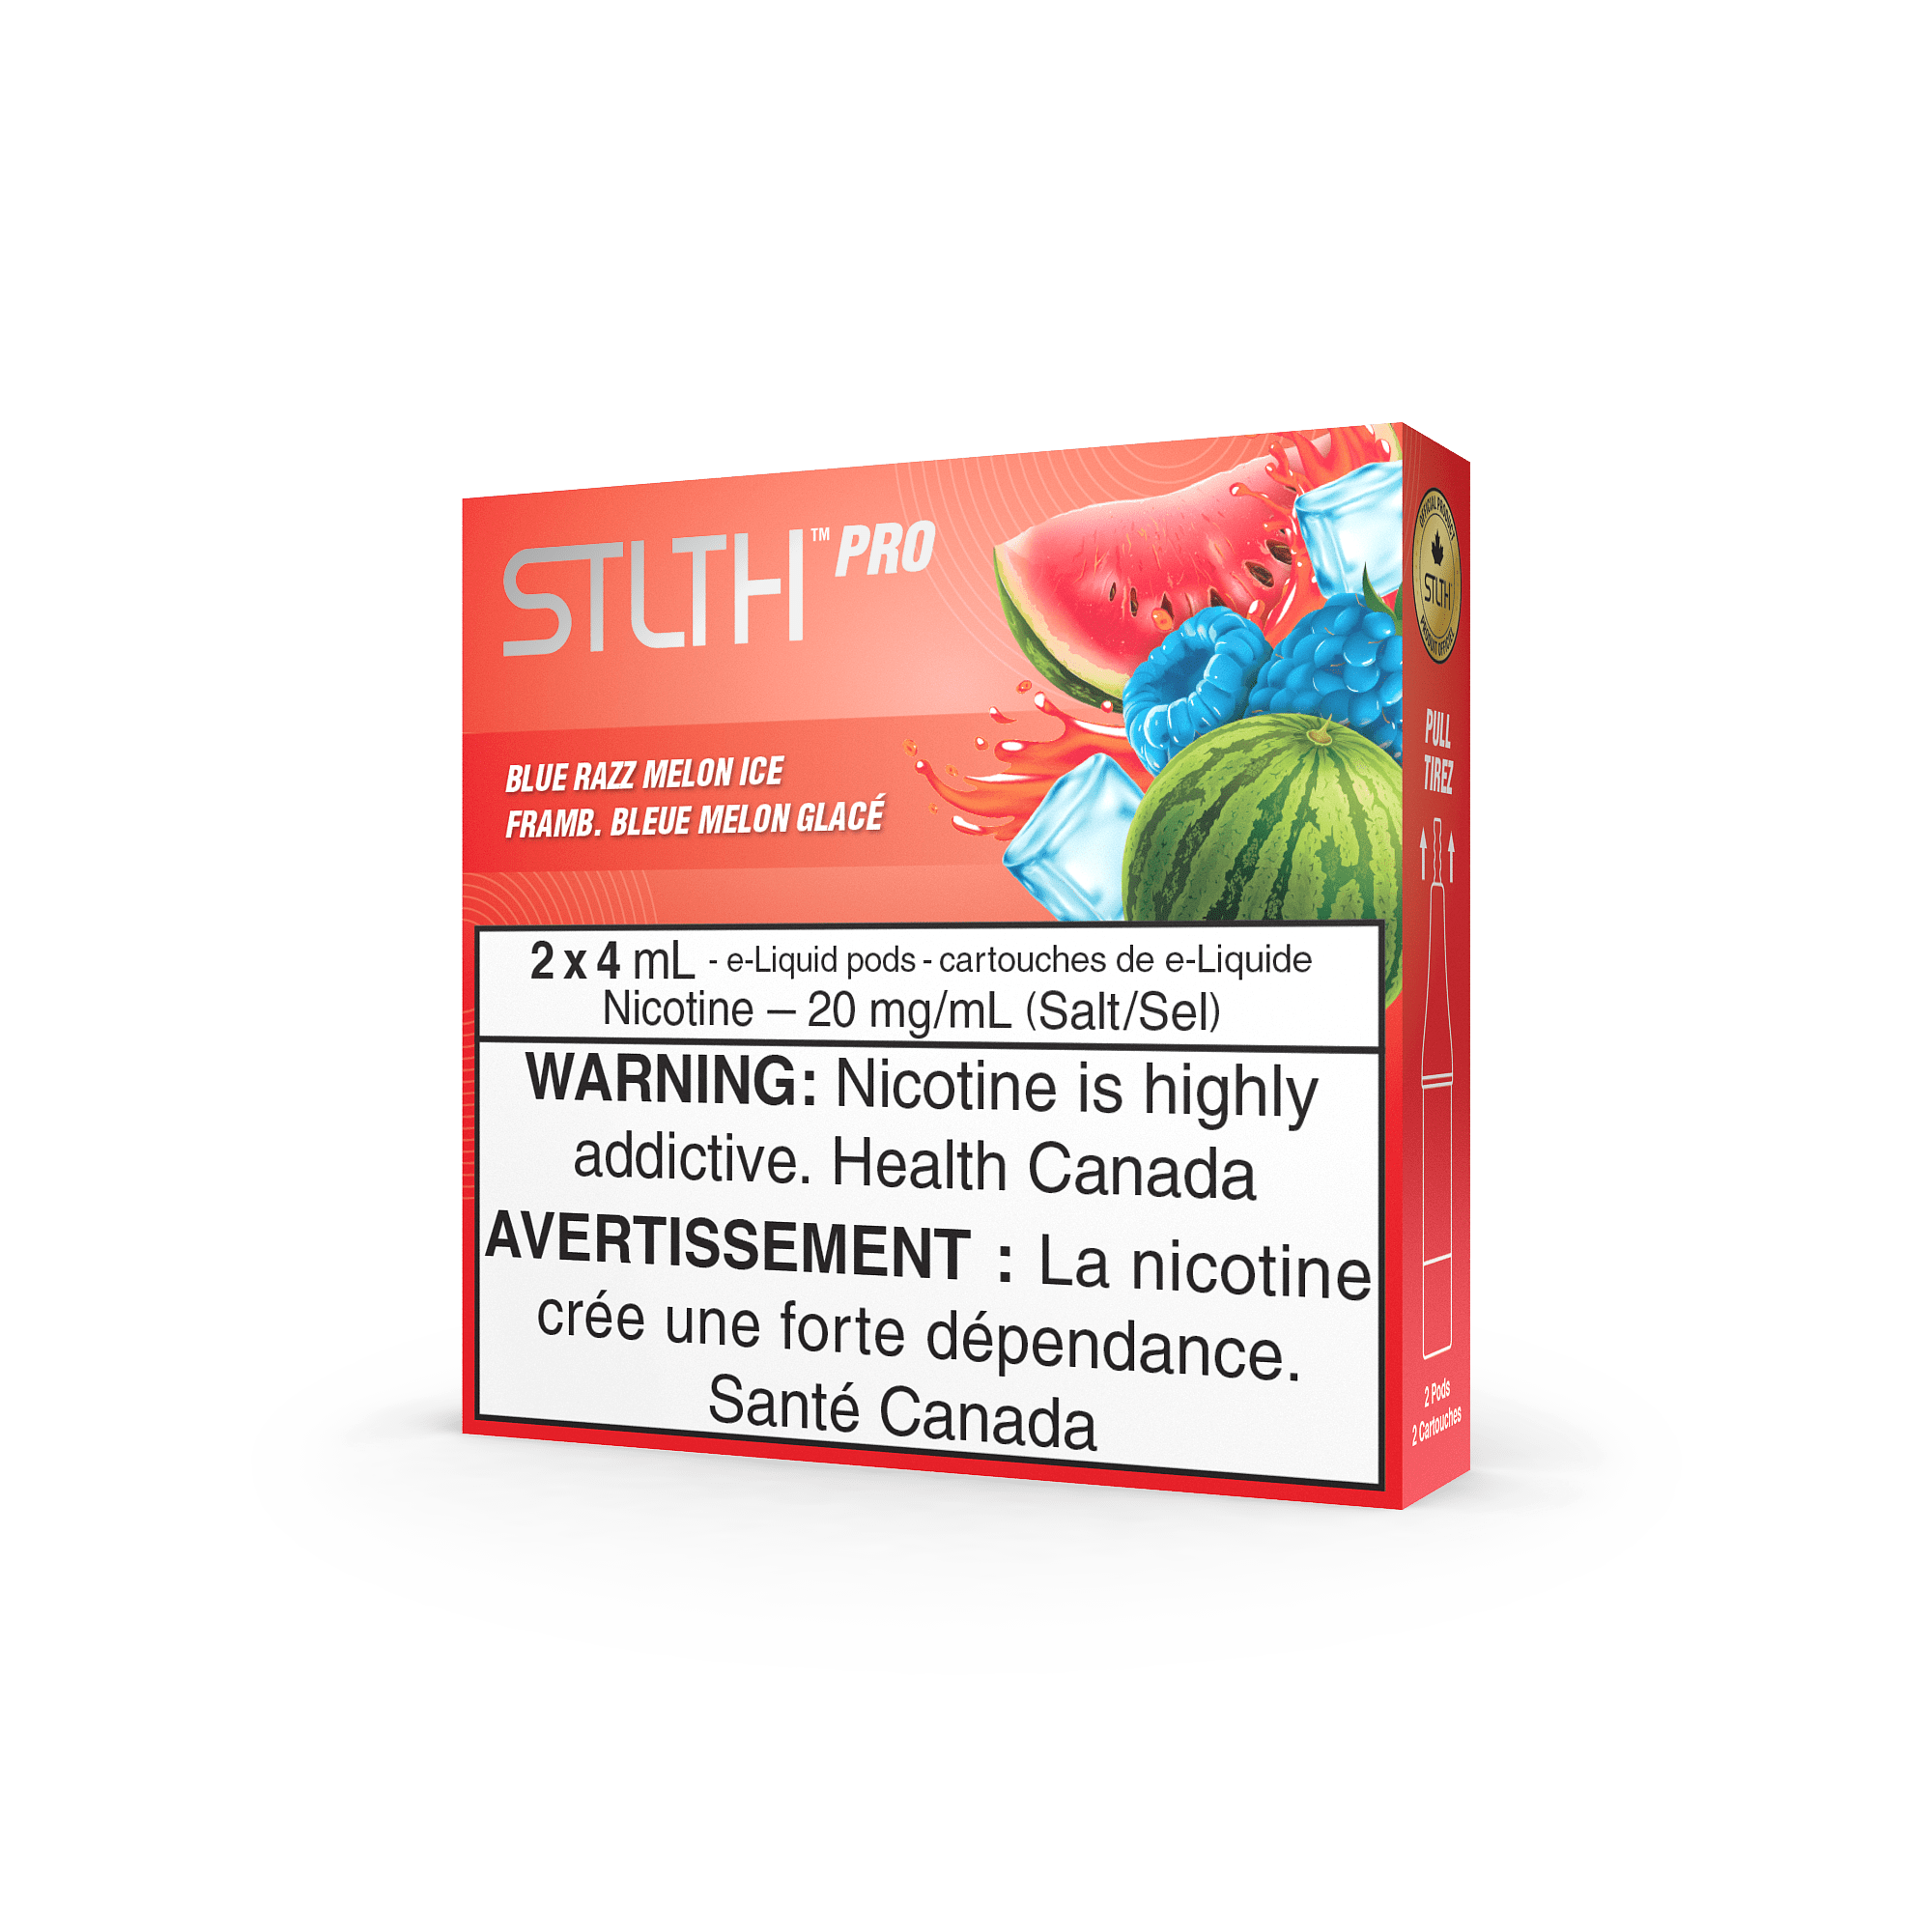 STLTH Pro - Blue Razz Melon Ice Vape Pod available on Canada online vape shop